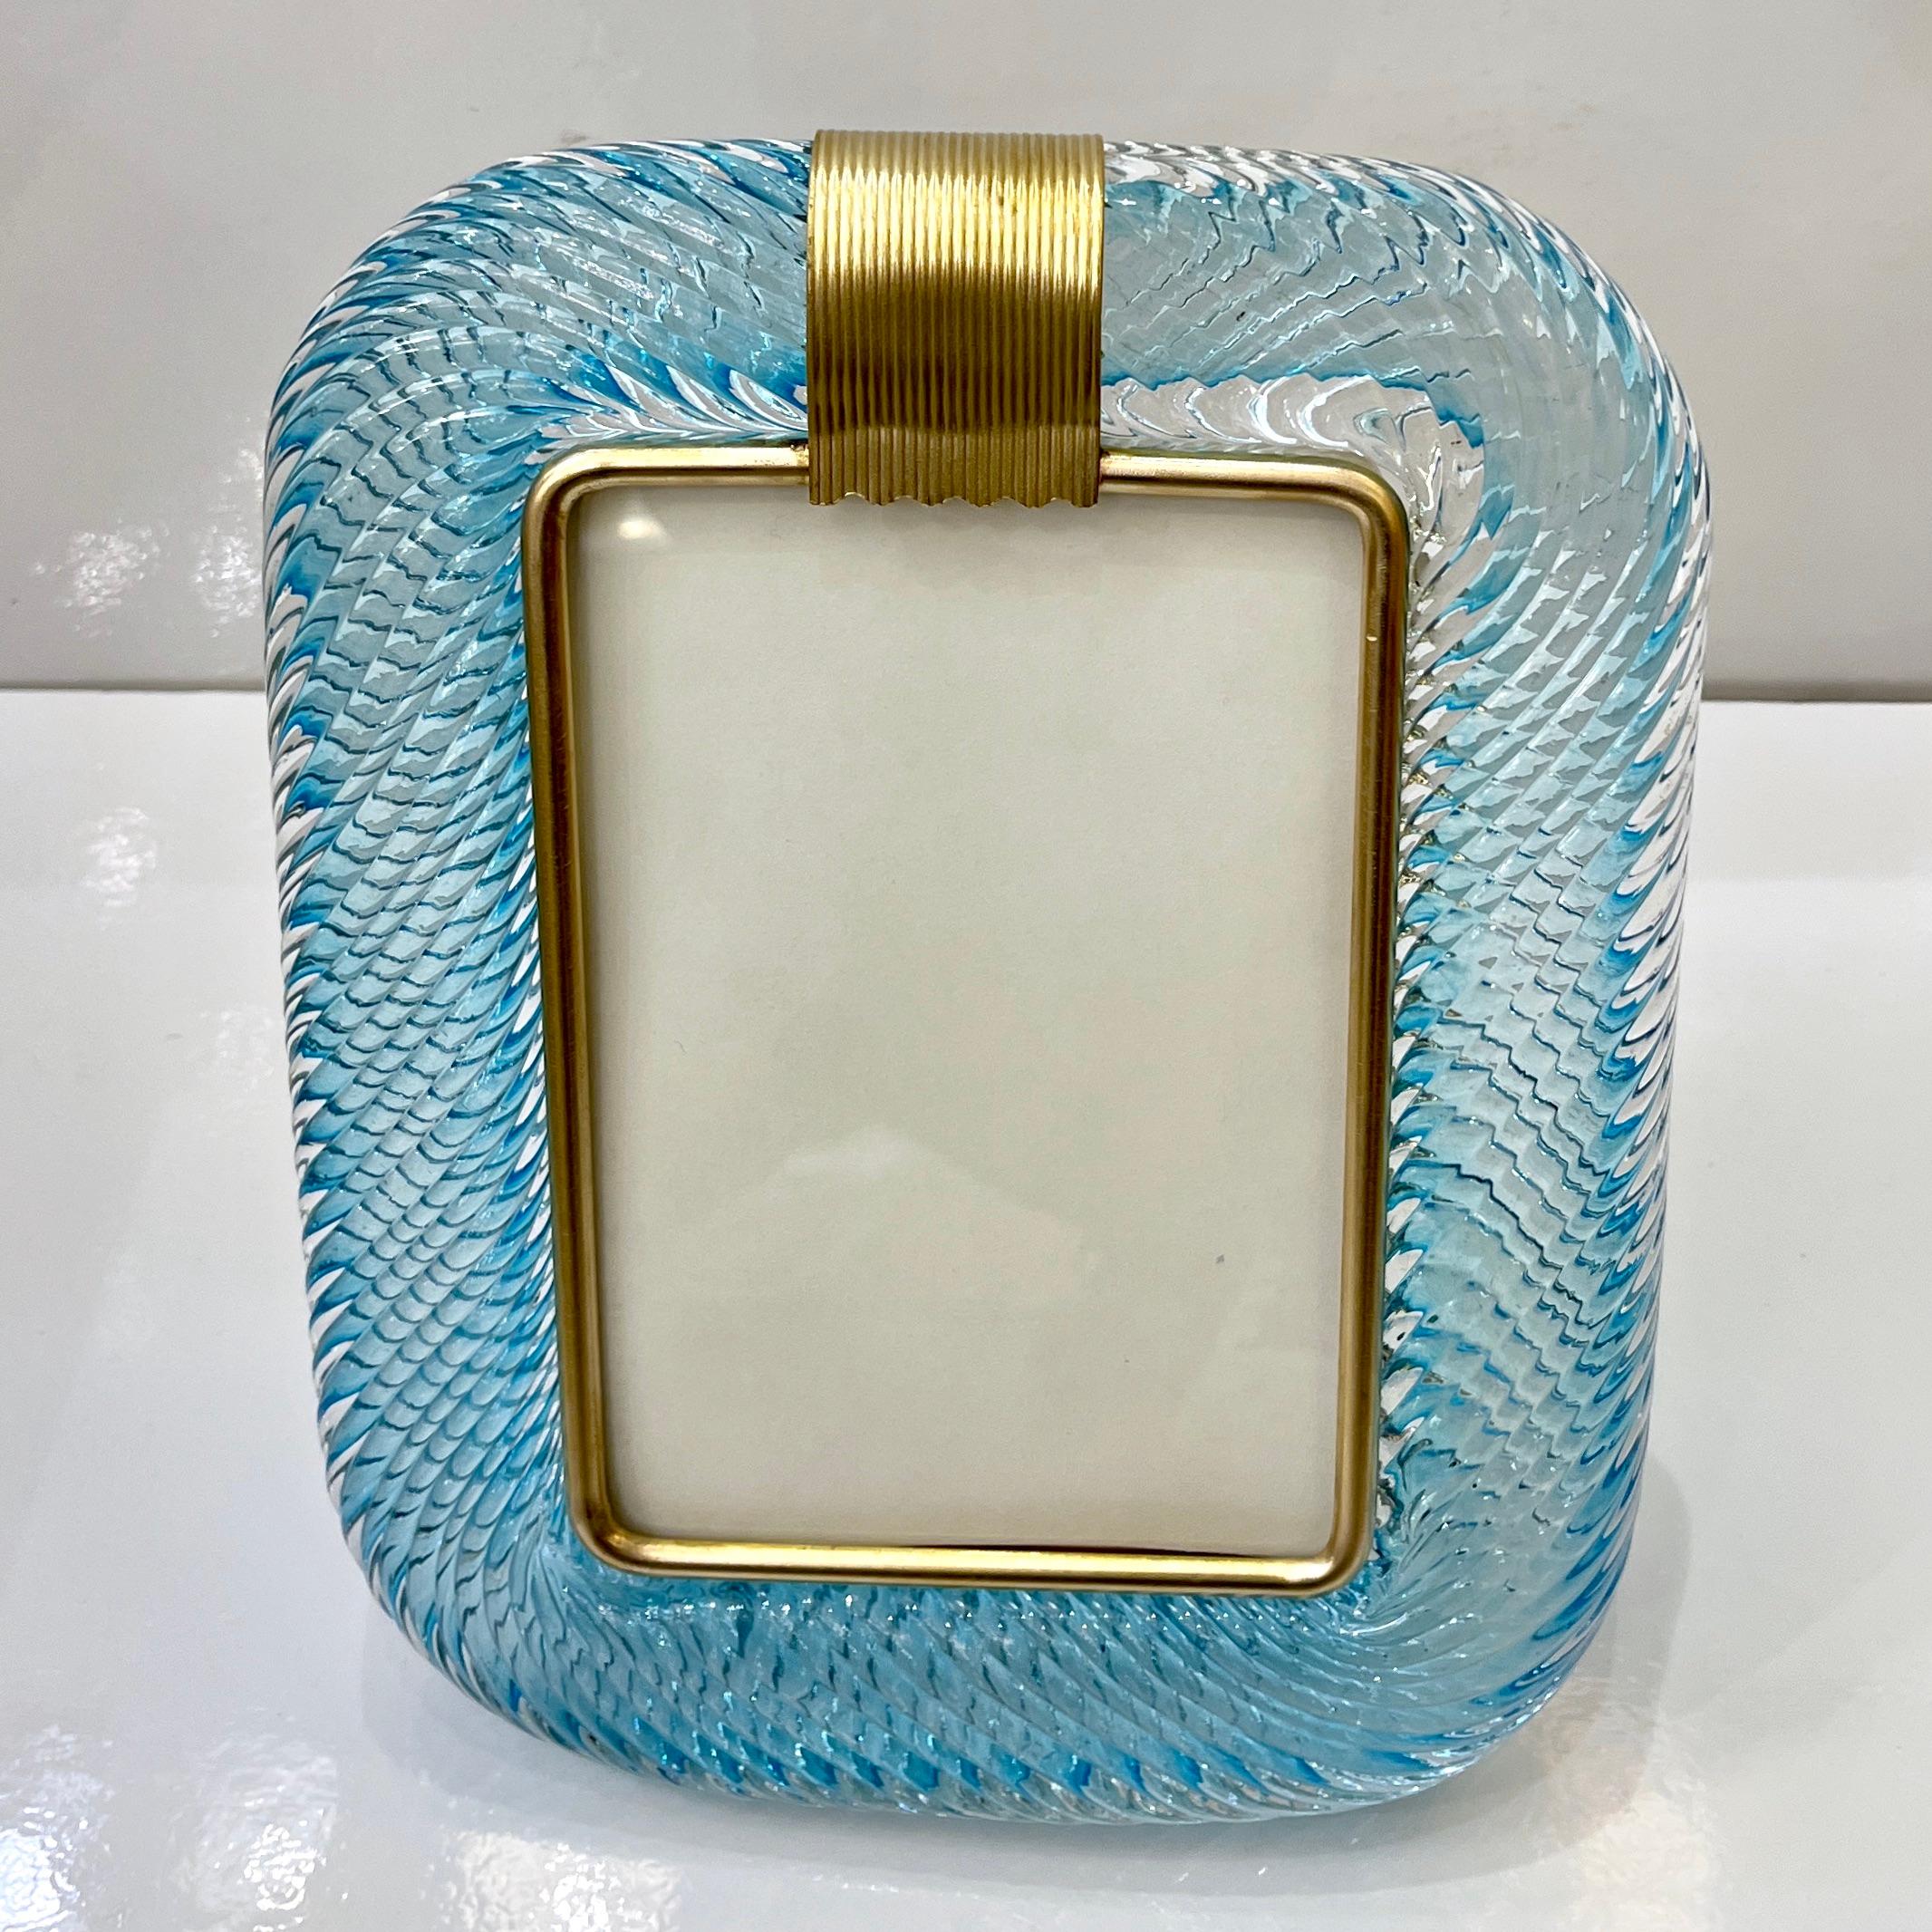 Ein raffinierter vertikaler Fotorahmen im modernen venezianischen Design aus dickem mundgeblasenem Murano-Glas in einem üppigen türkisblauen Juwel, von Barovier Toso, signiertes Stück. Die elegante Textur des eng gedrehten Glasrahmens in der